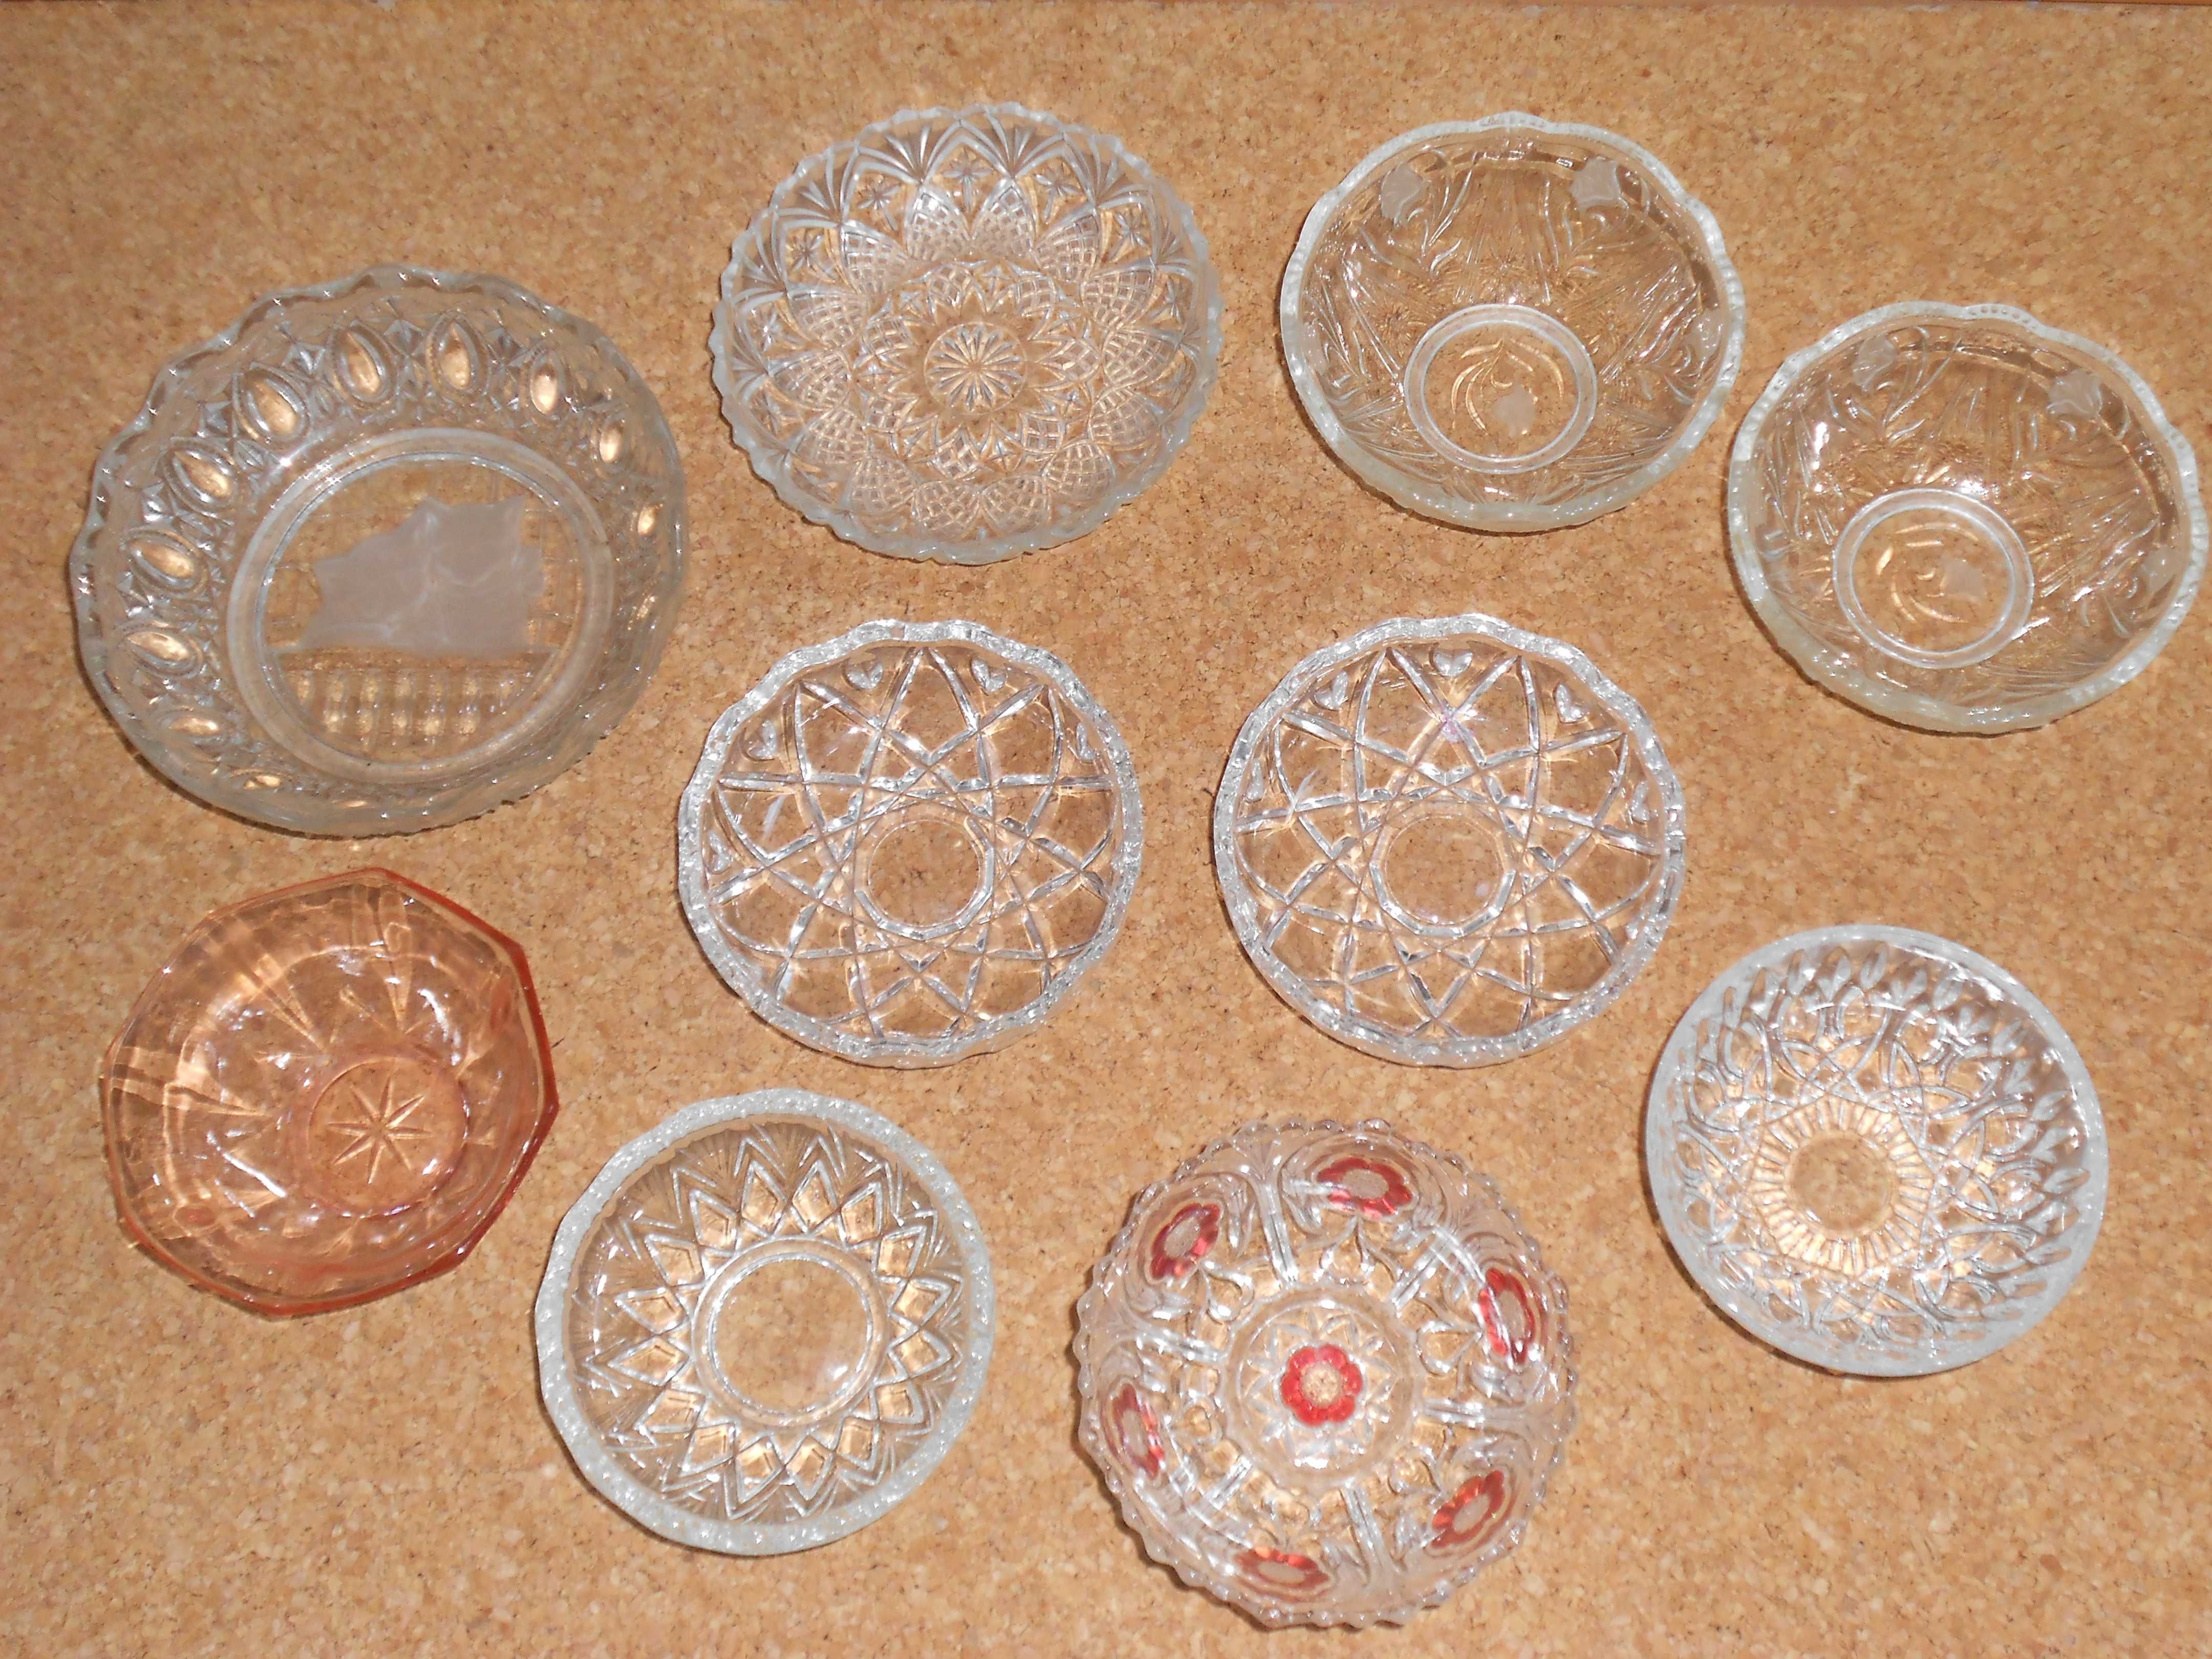 Diversos pratos e taças antigas em vidro trabalhado